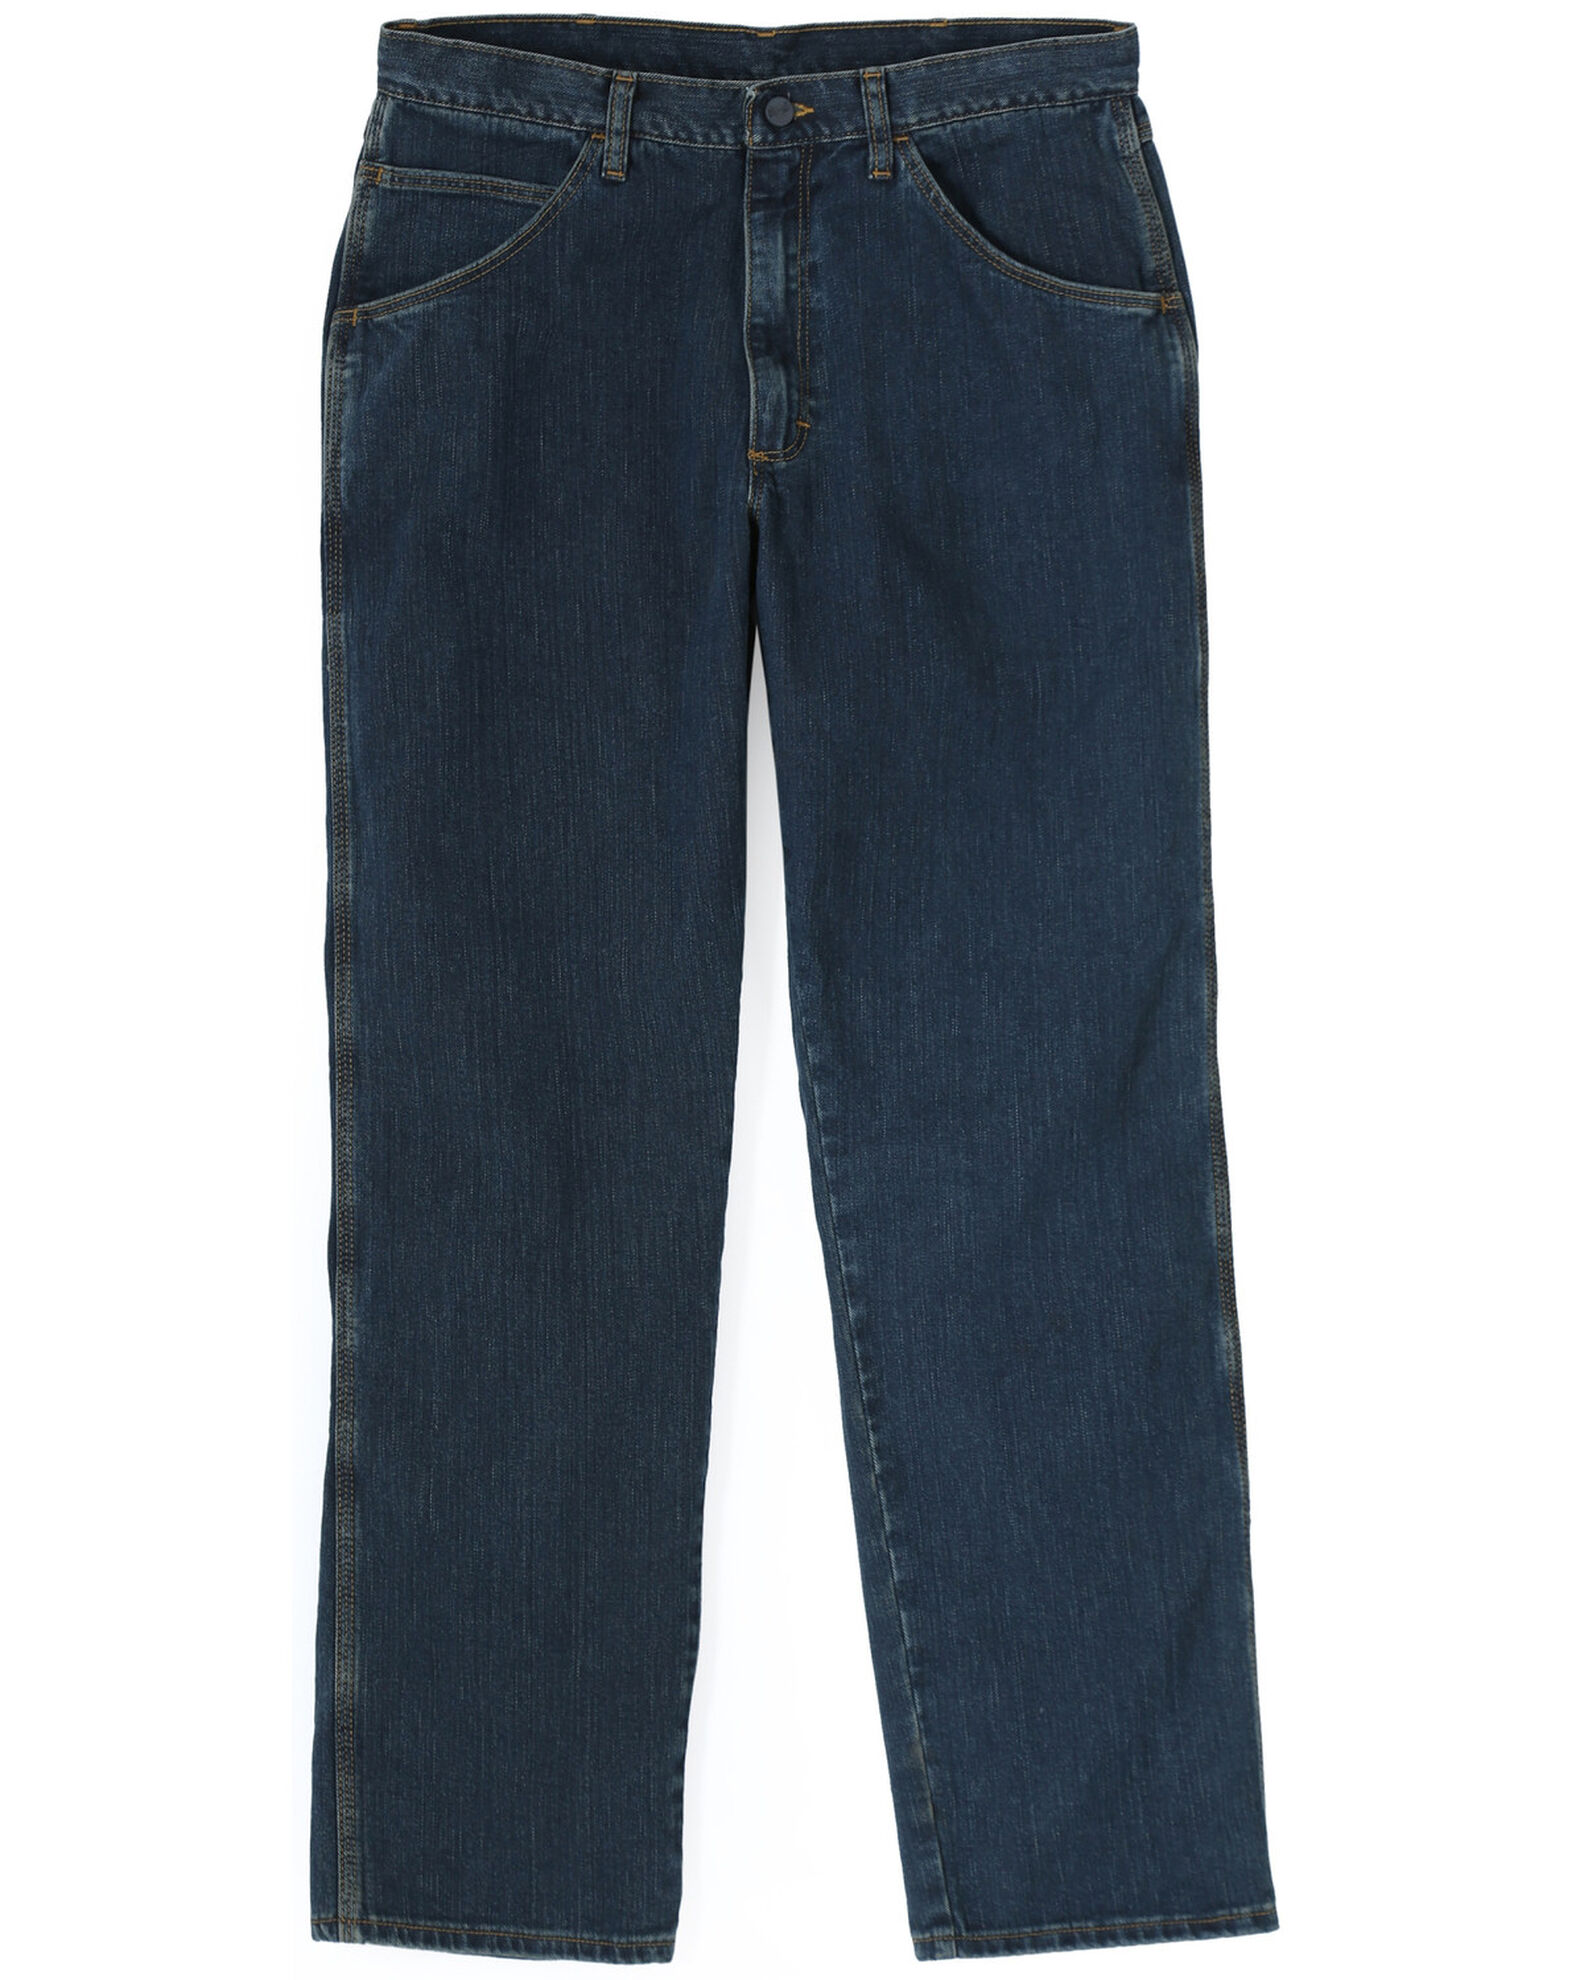 Wrangler Men's FR Advanced Comfort Work Jeans | Boot Barn